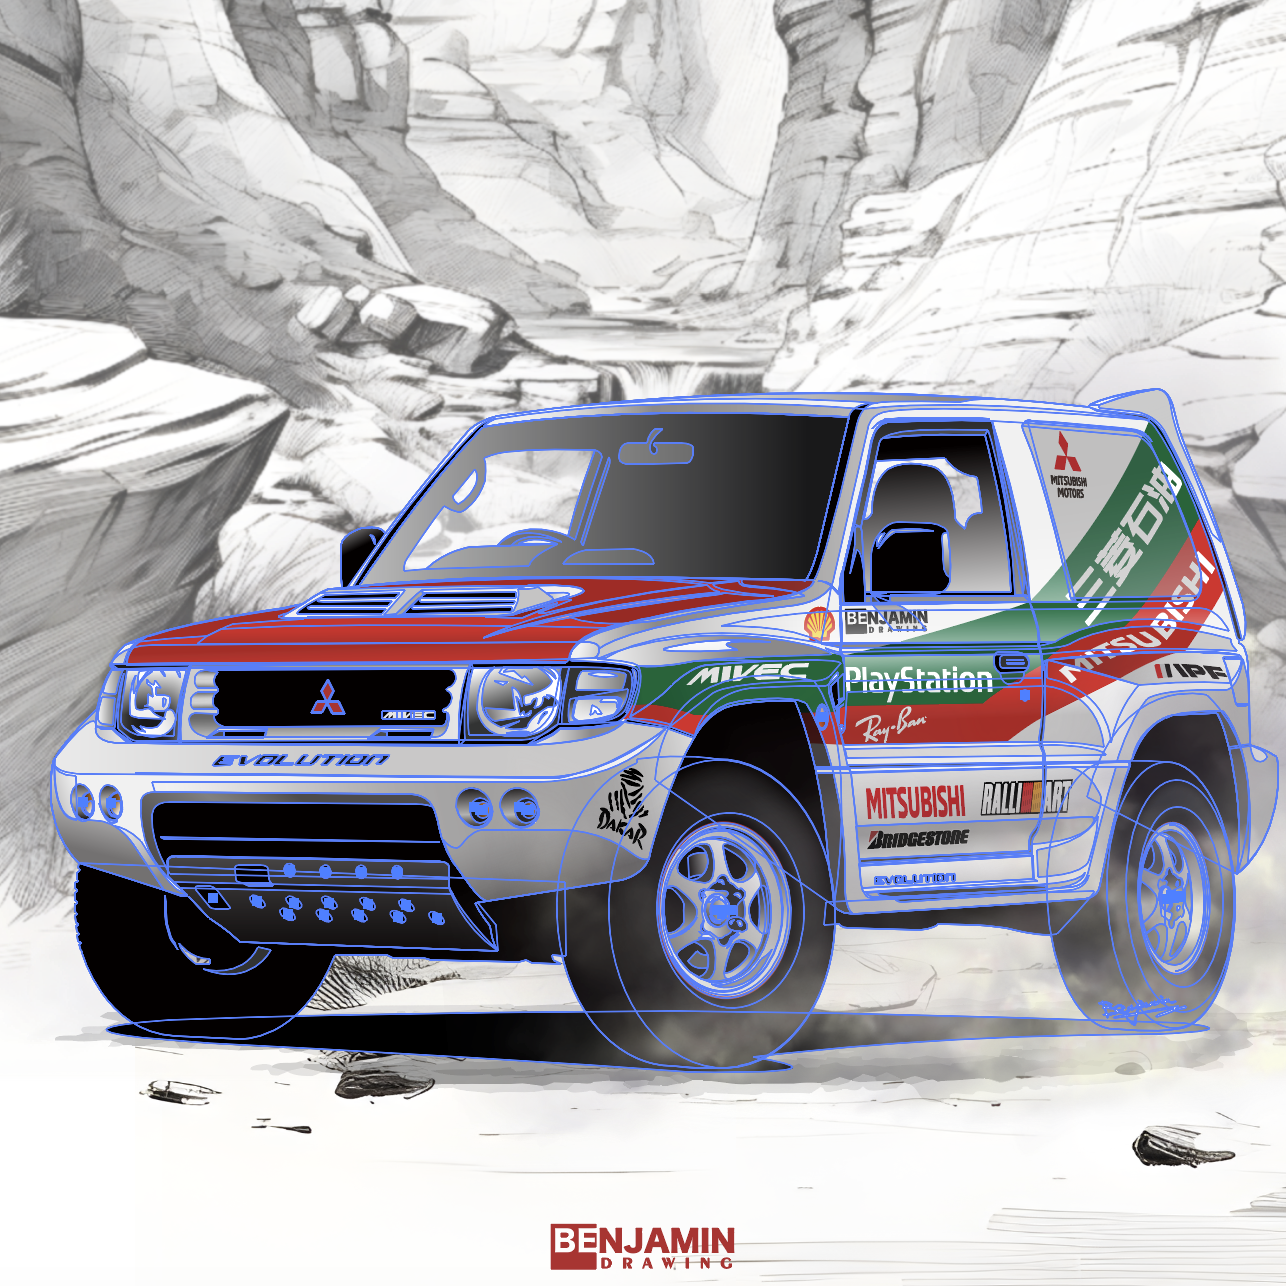 三菱帕杰罗 Mitsubishi pajero 达喀尔拉力赛涂装插画图片壁纸